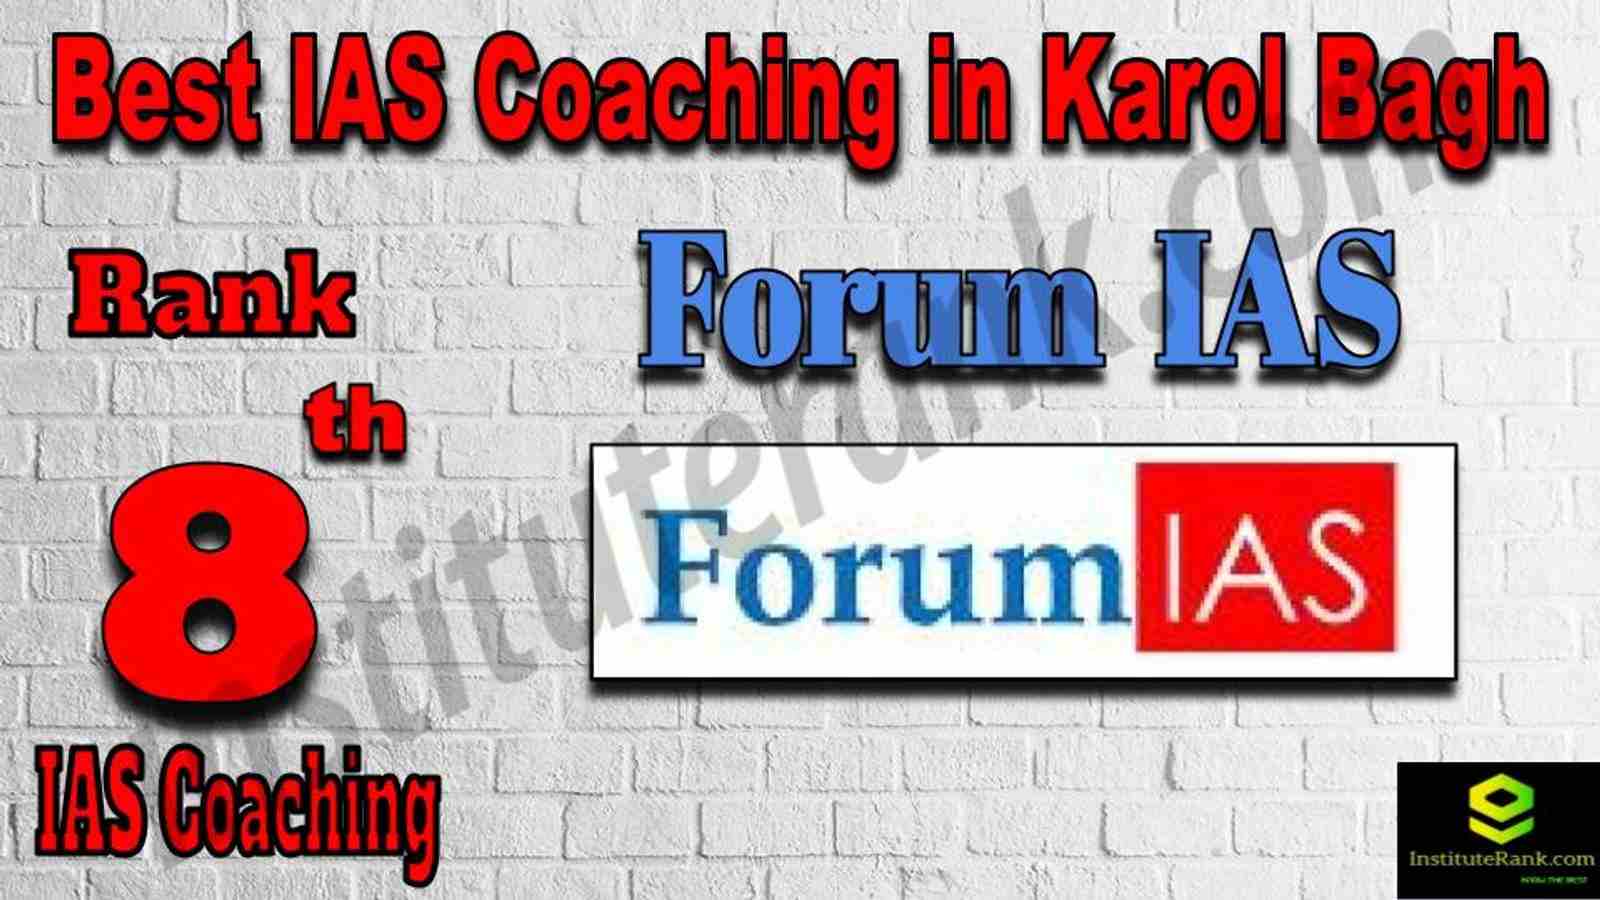 8th Best IAS Coaching in Karol Bagh